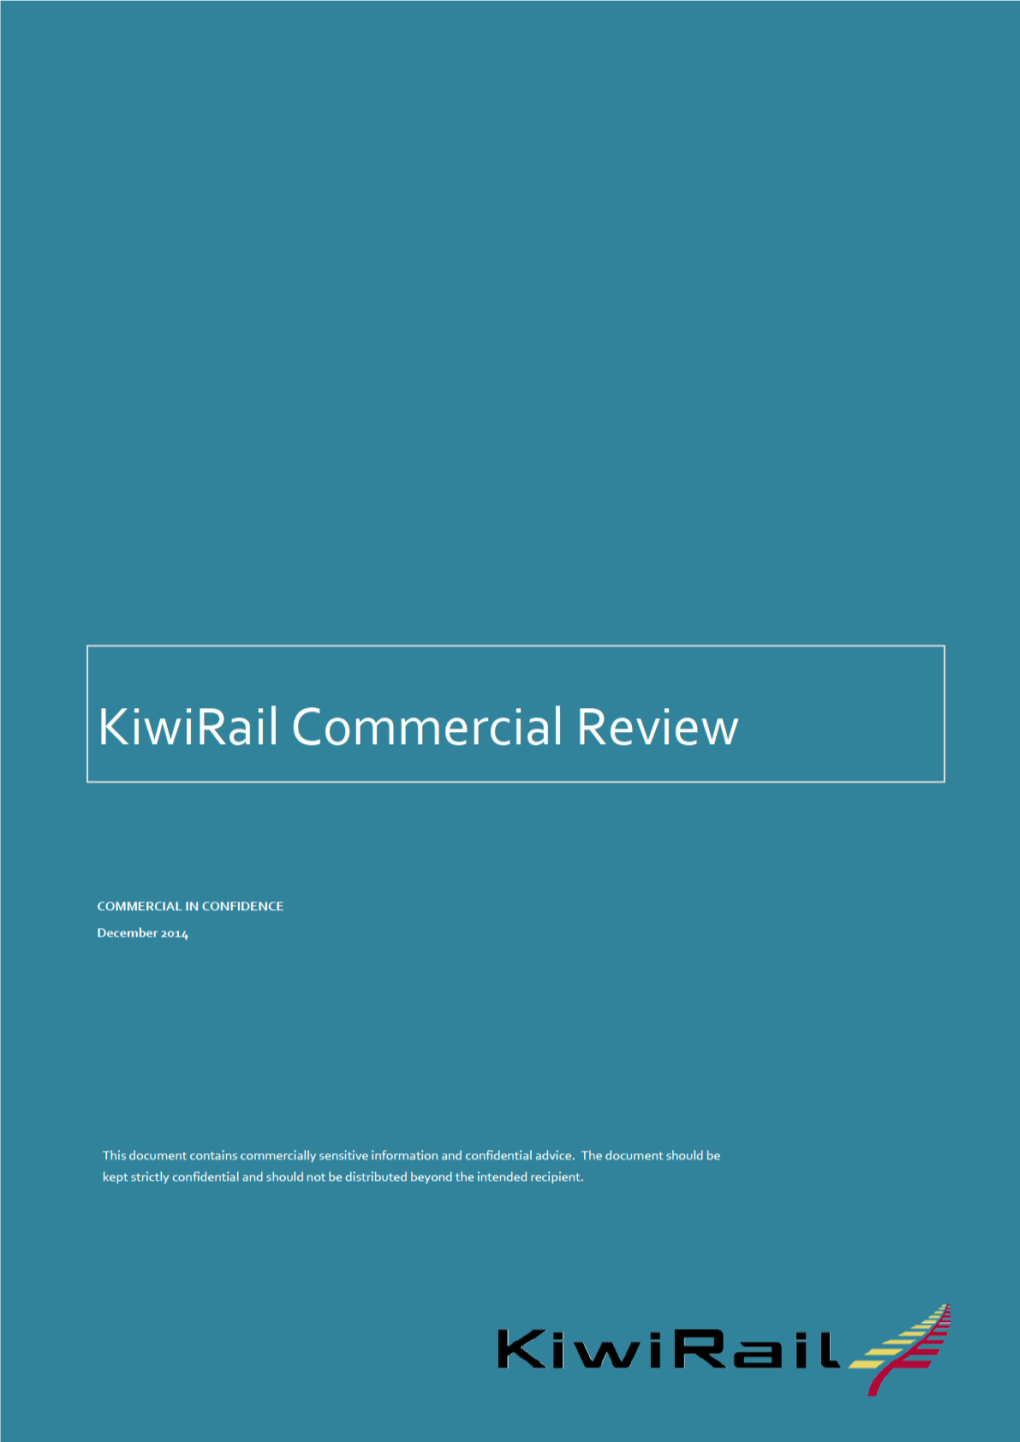 3. Kiwirail's Business